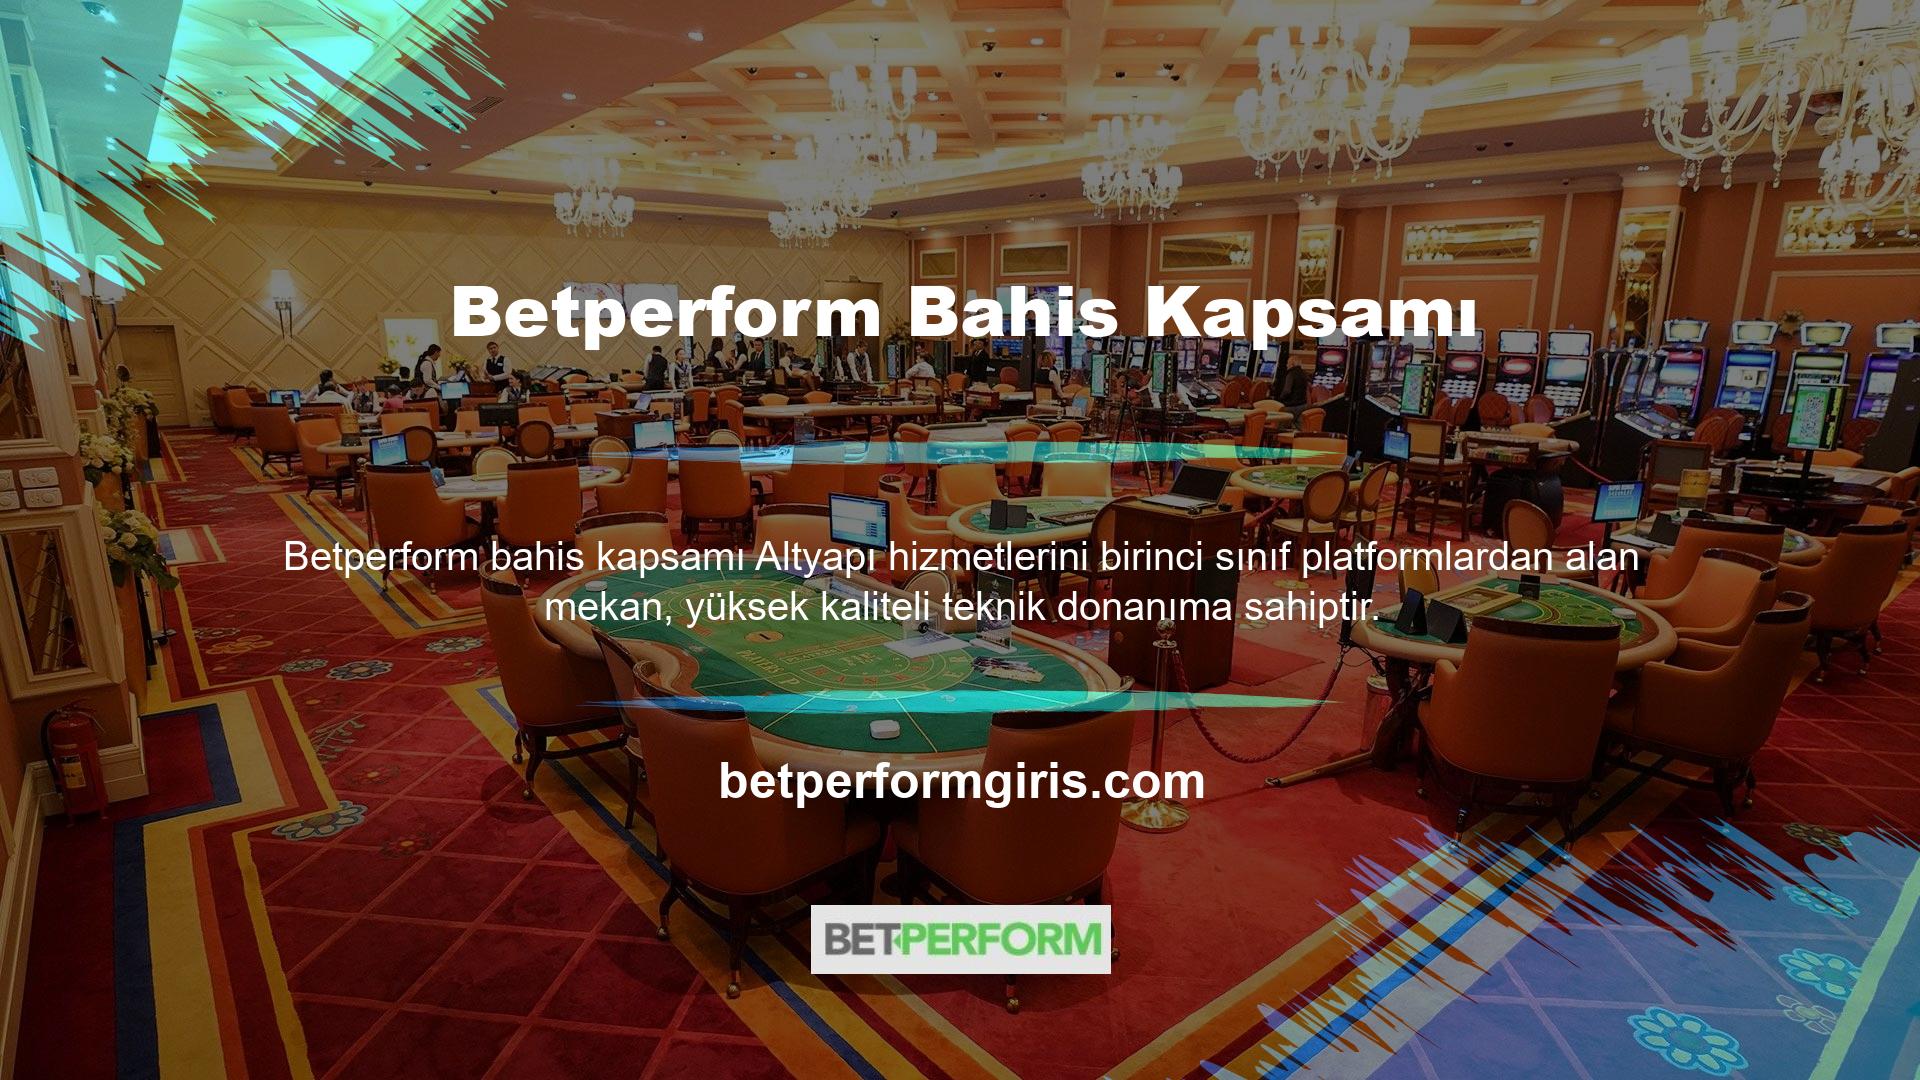 Betperform web sitesi, uzun yıllardır küresel casino pazarında faaliyet gösteriyor ancak Türkiye pazarına yeni girdi